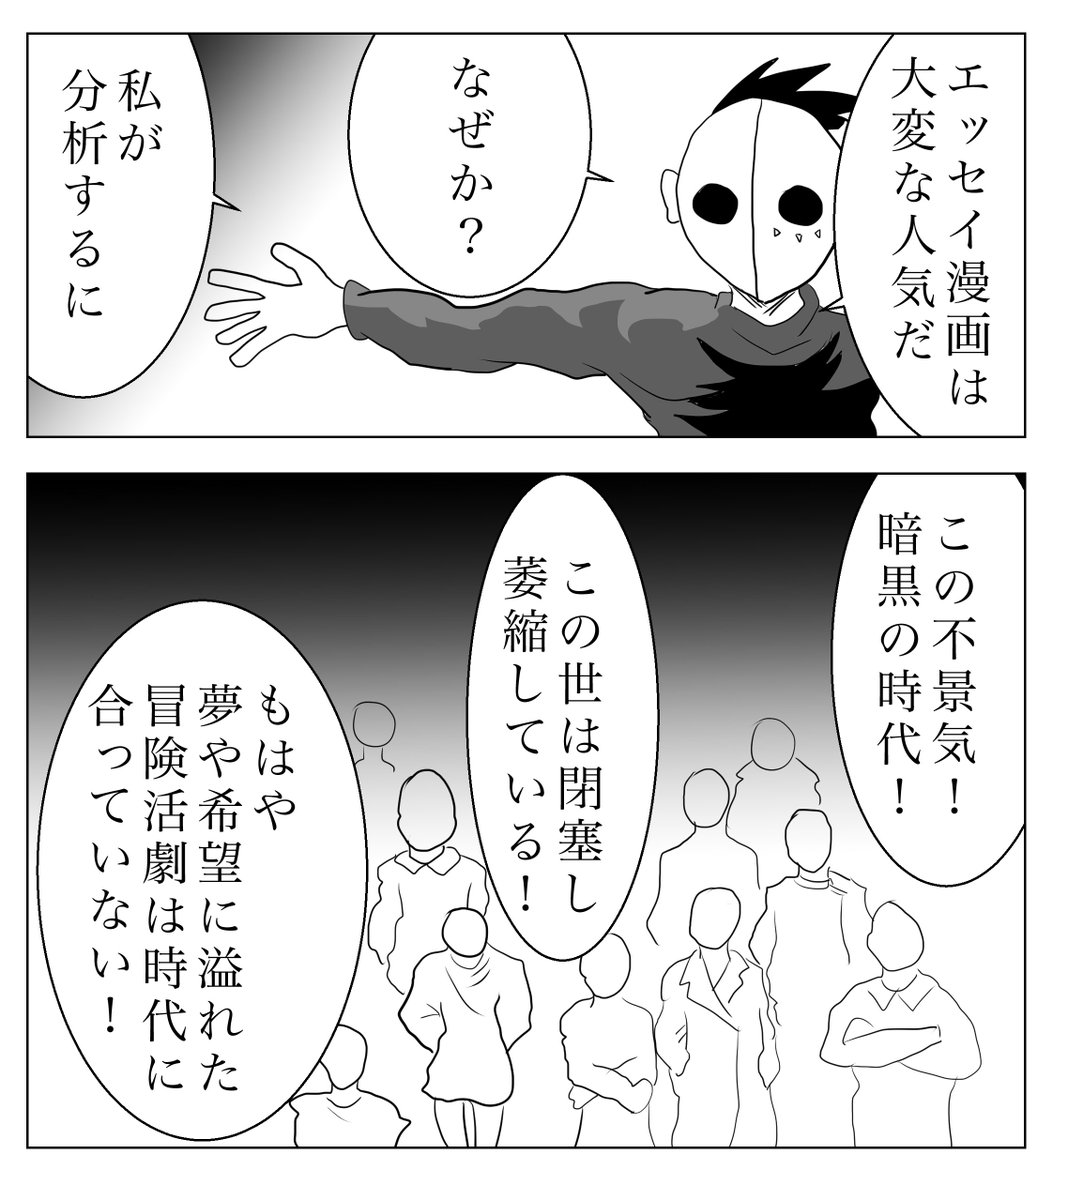 日々7 エッセイ漫画が流行っている!!! 